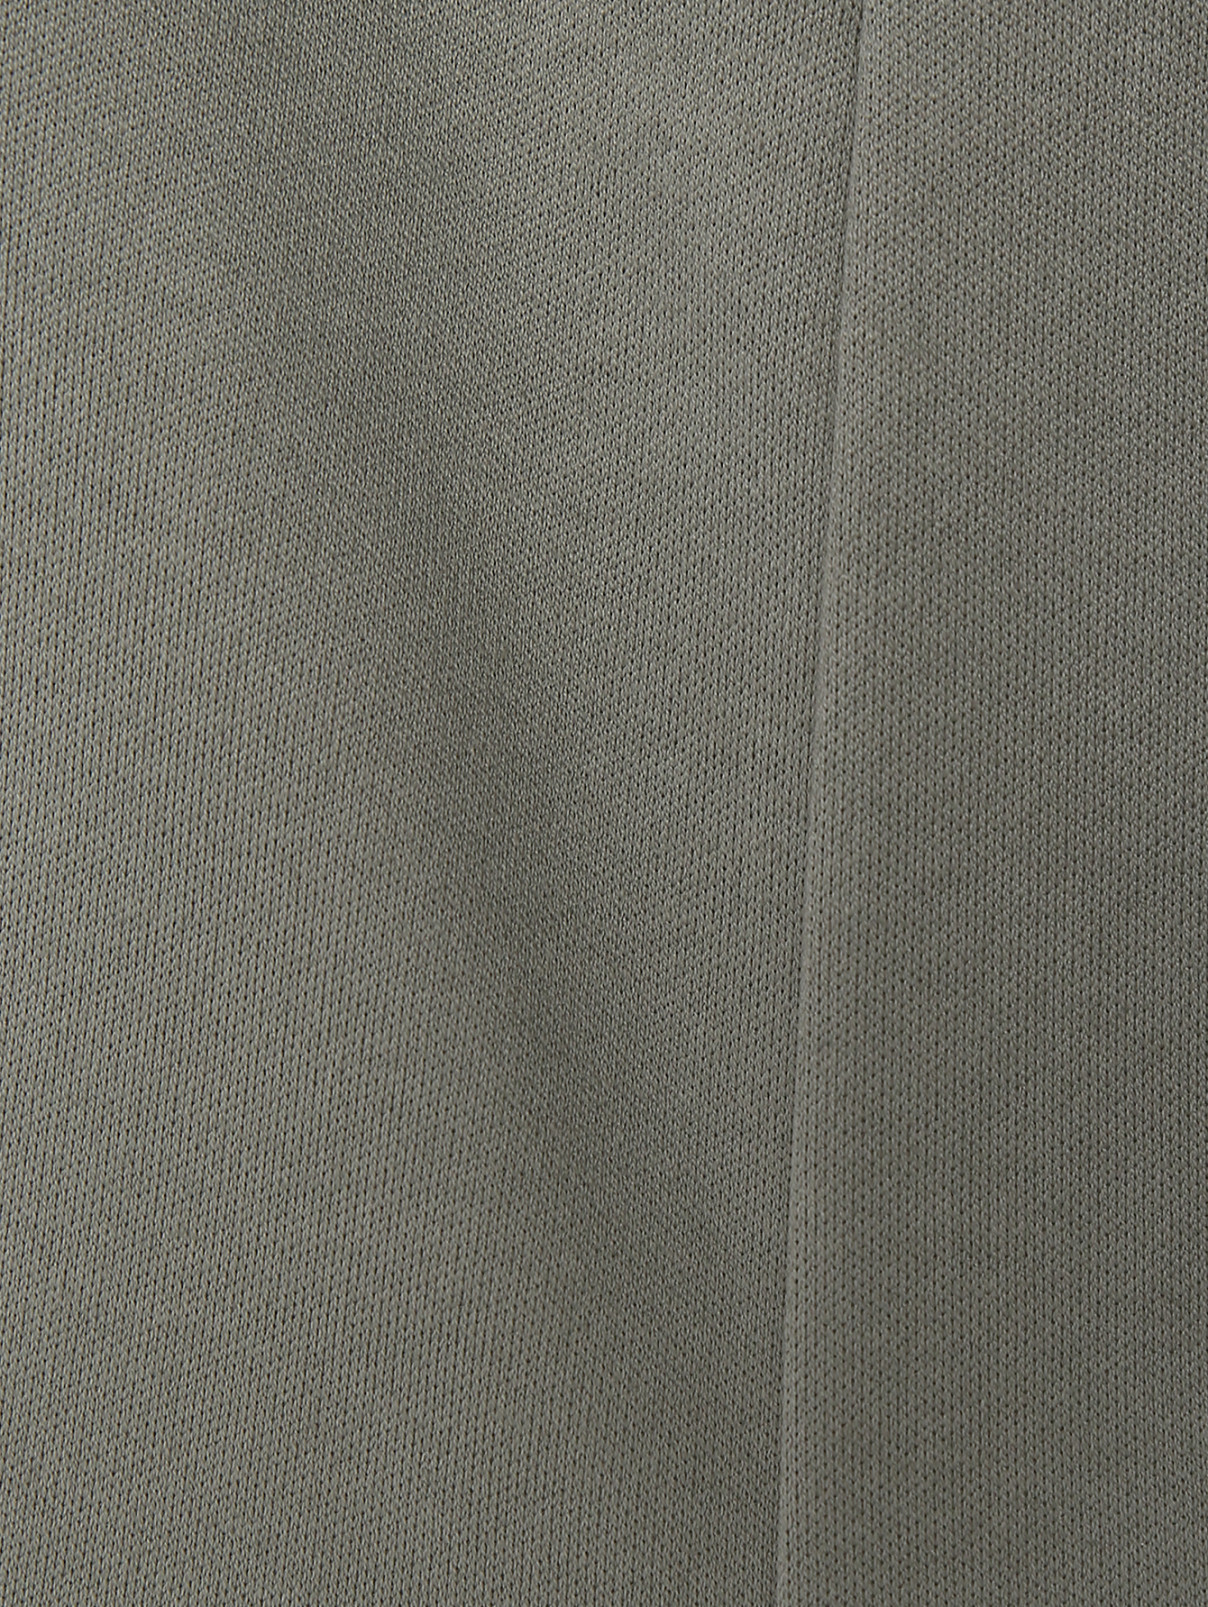 Трикотажные брюки на резинке Capobianco  –  Деталь1  – Цвет:  Зеленый